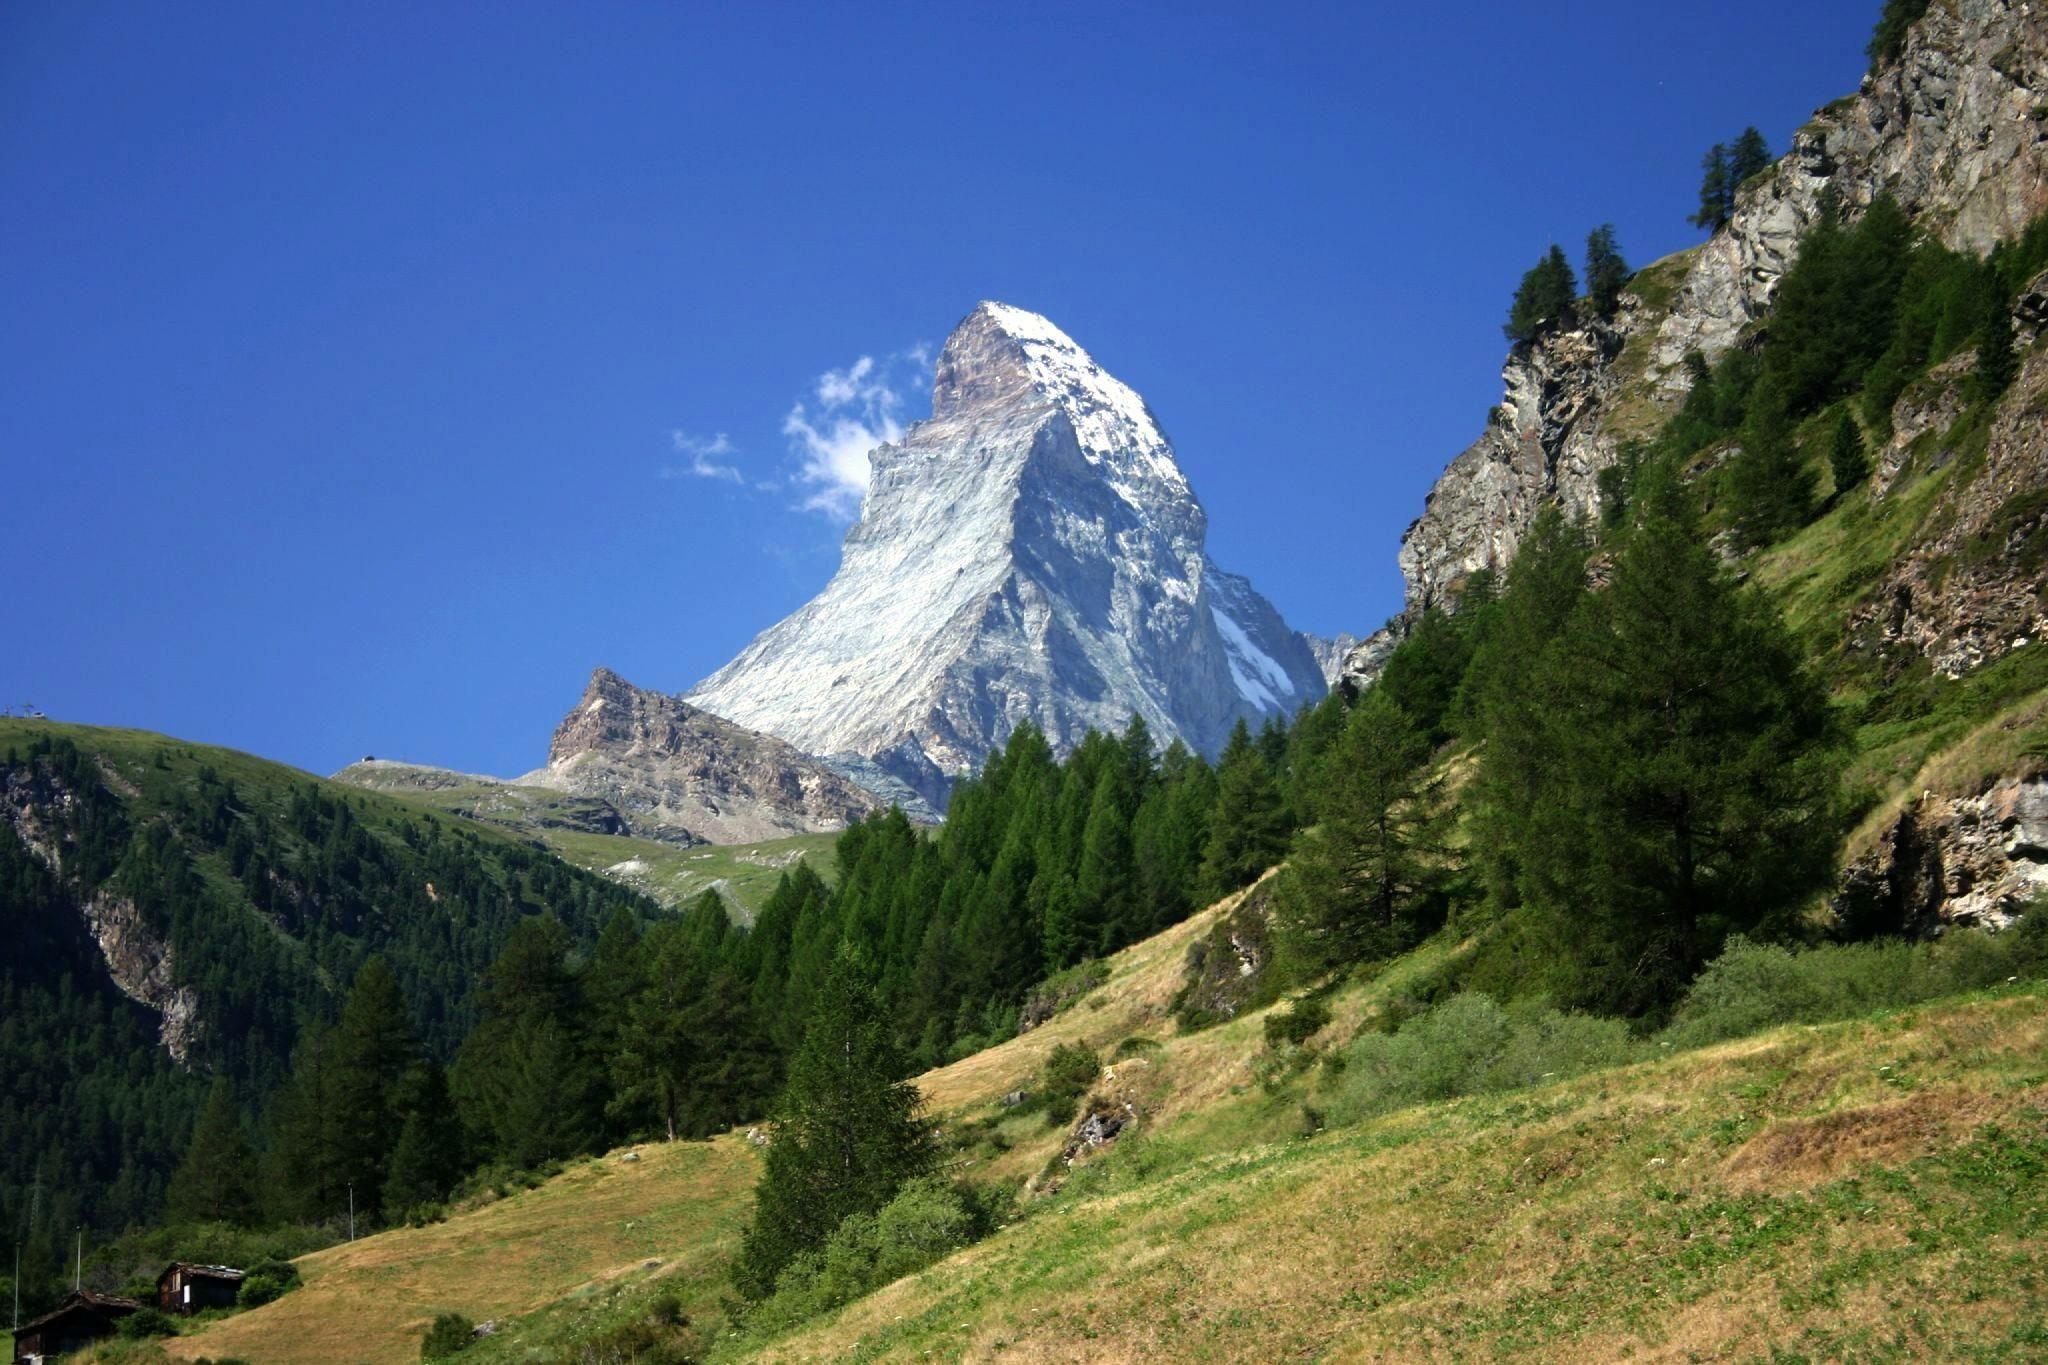 Matterhorn from the Zermatt (North side)